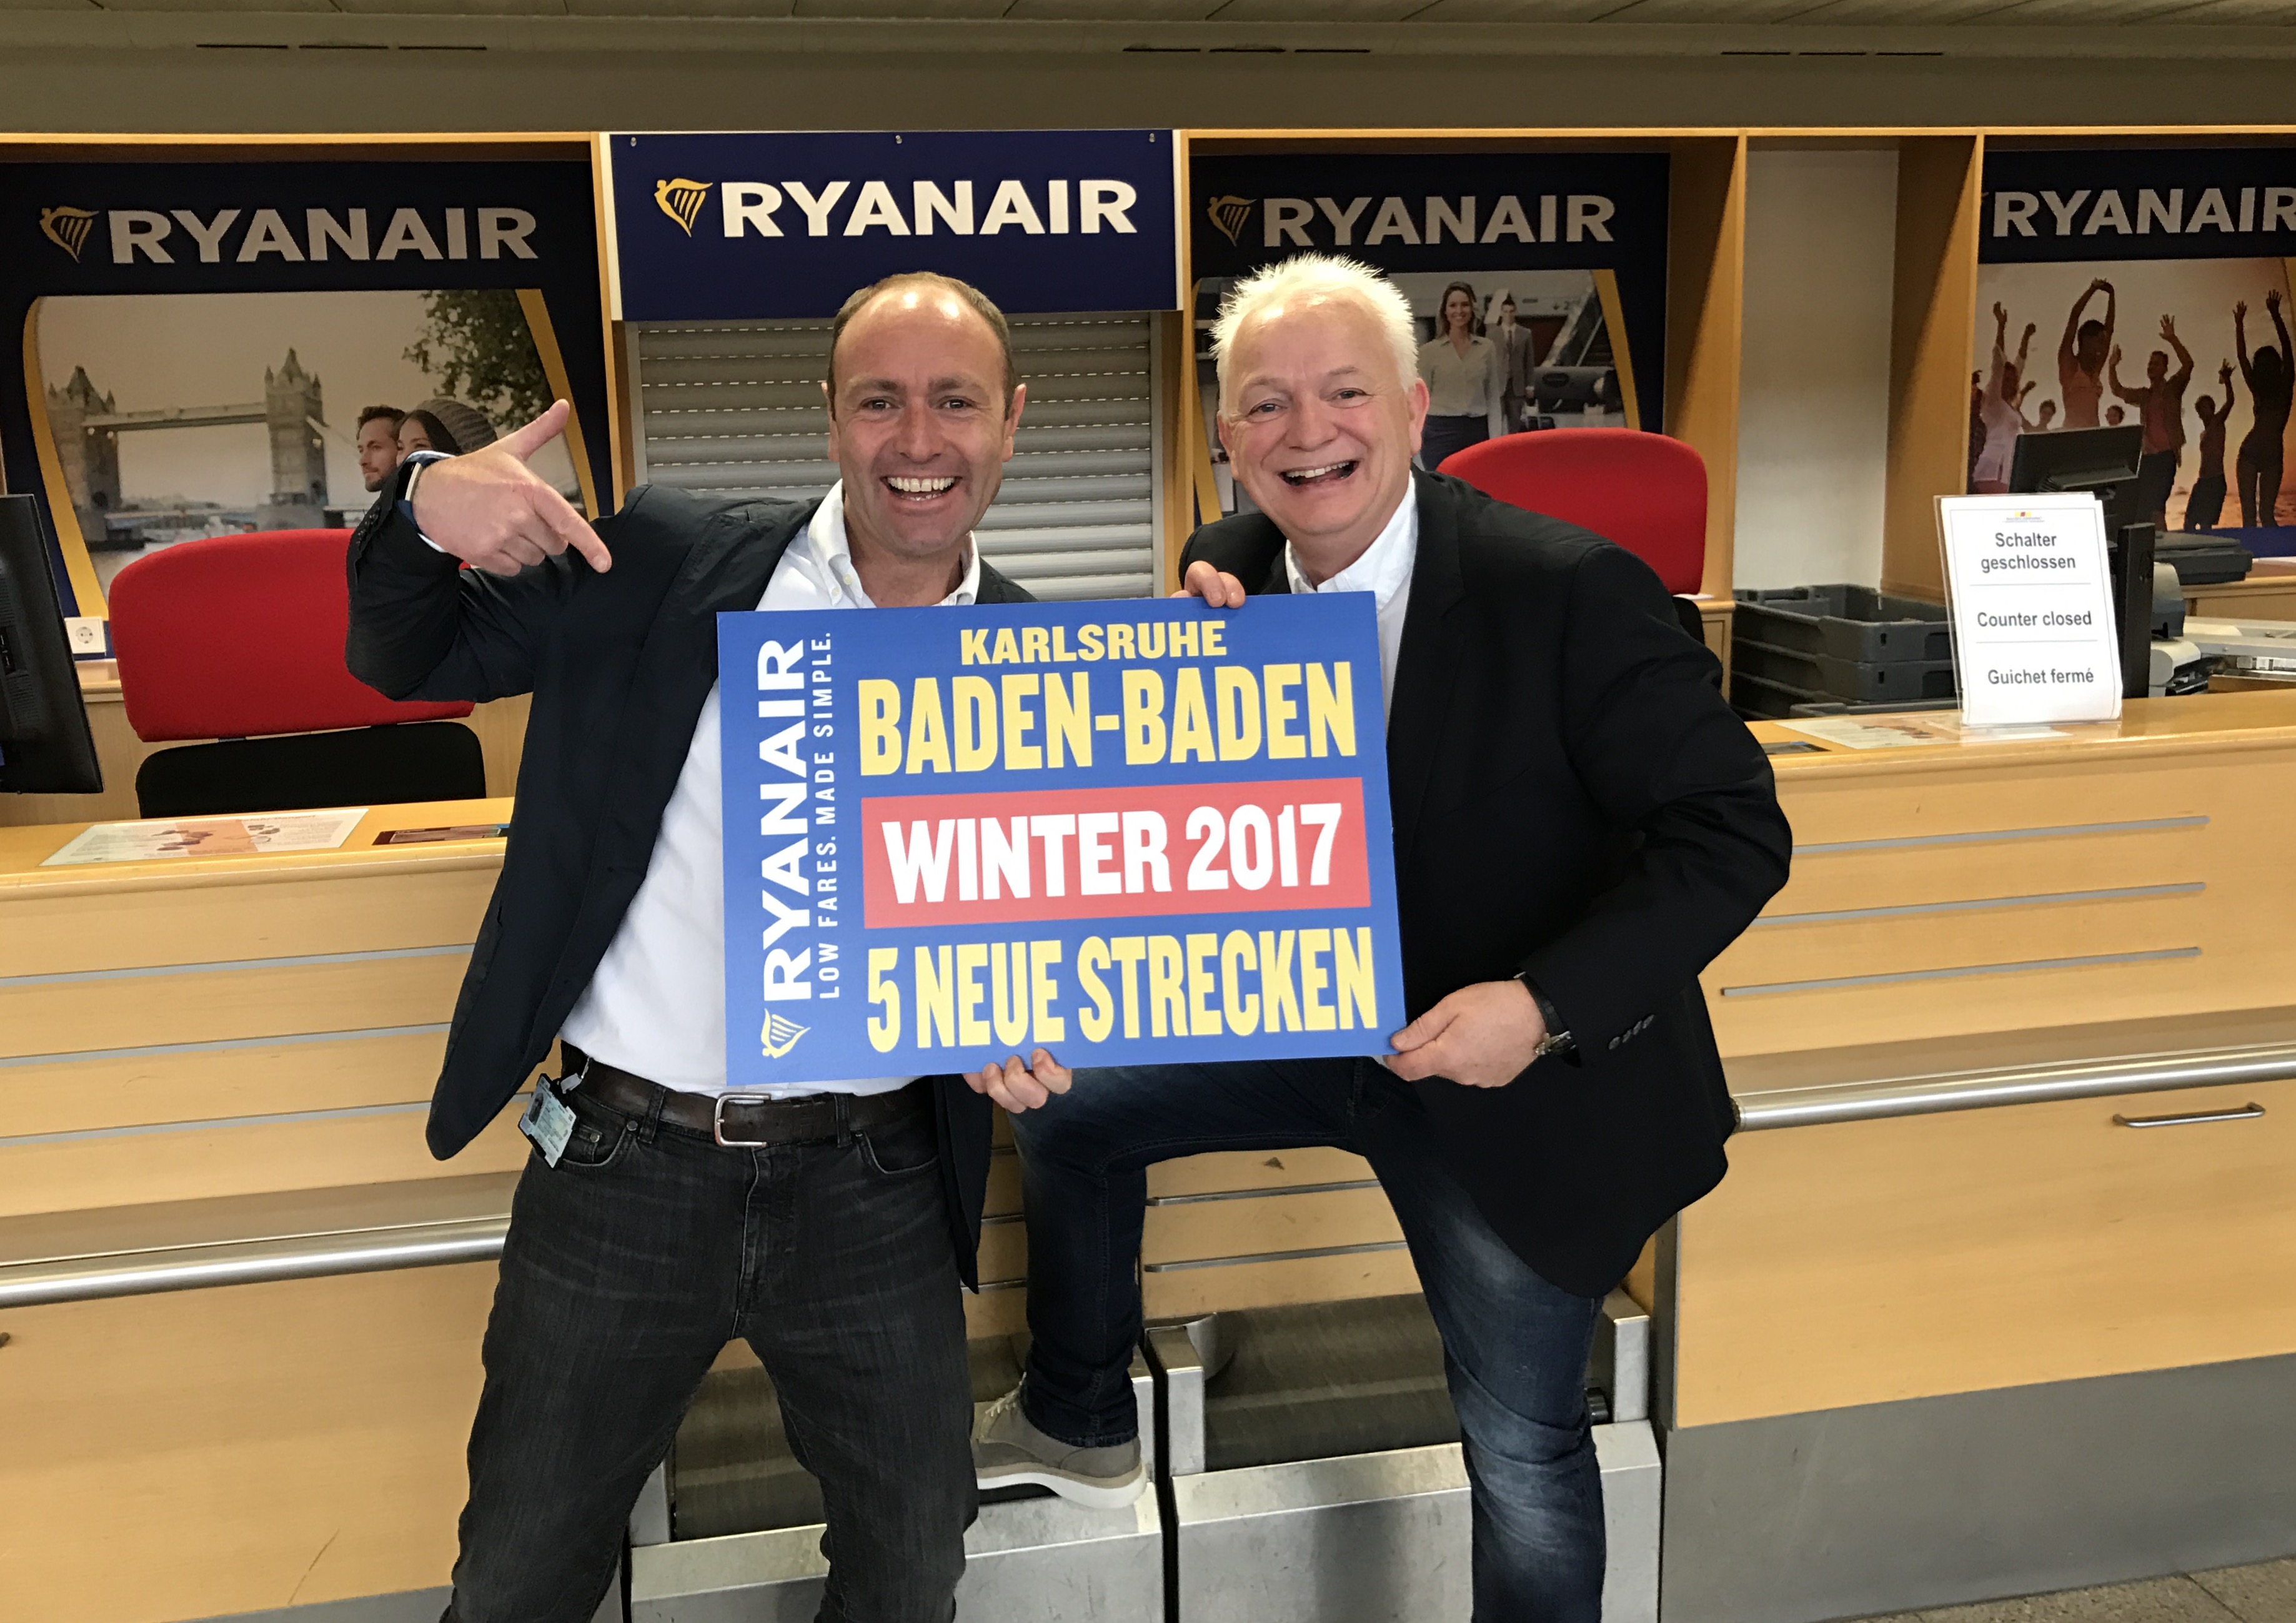 Ryanair Stellt Rekord-Winterflugplan 2017/2018 Für Baden-Baden Vor